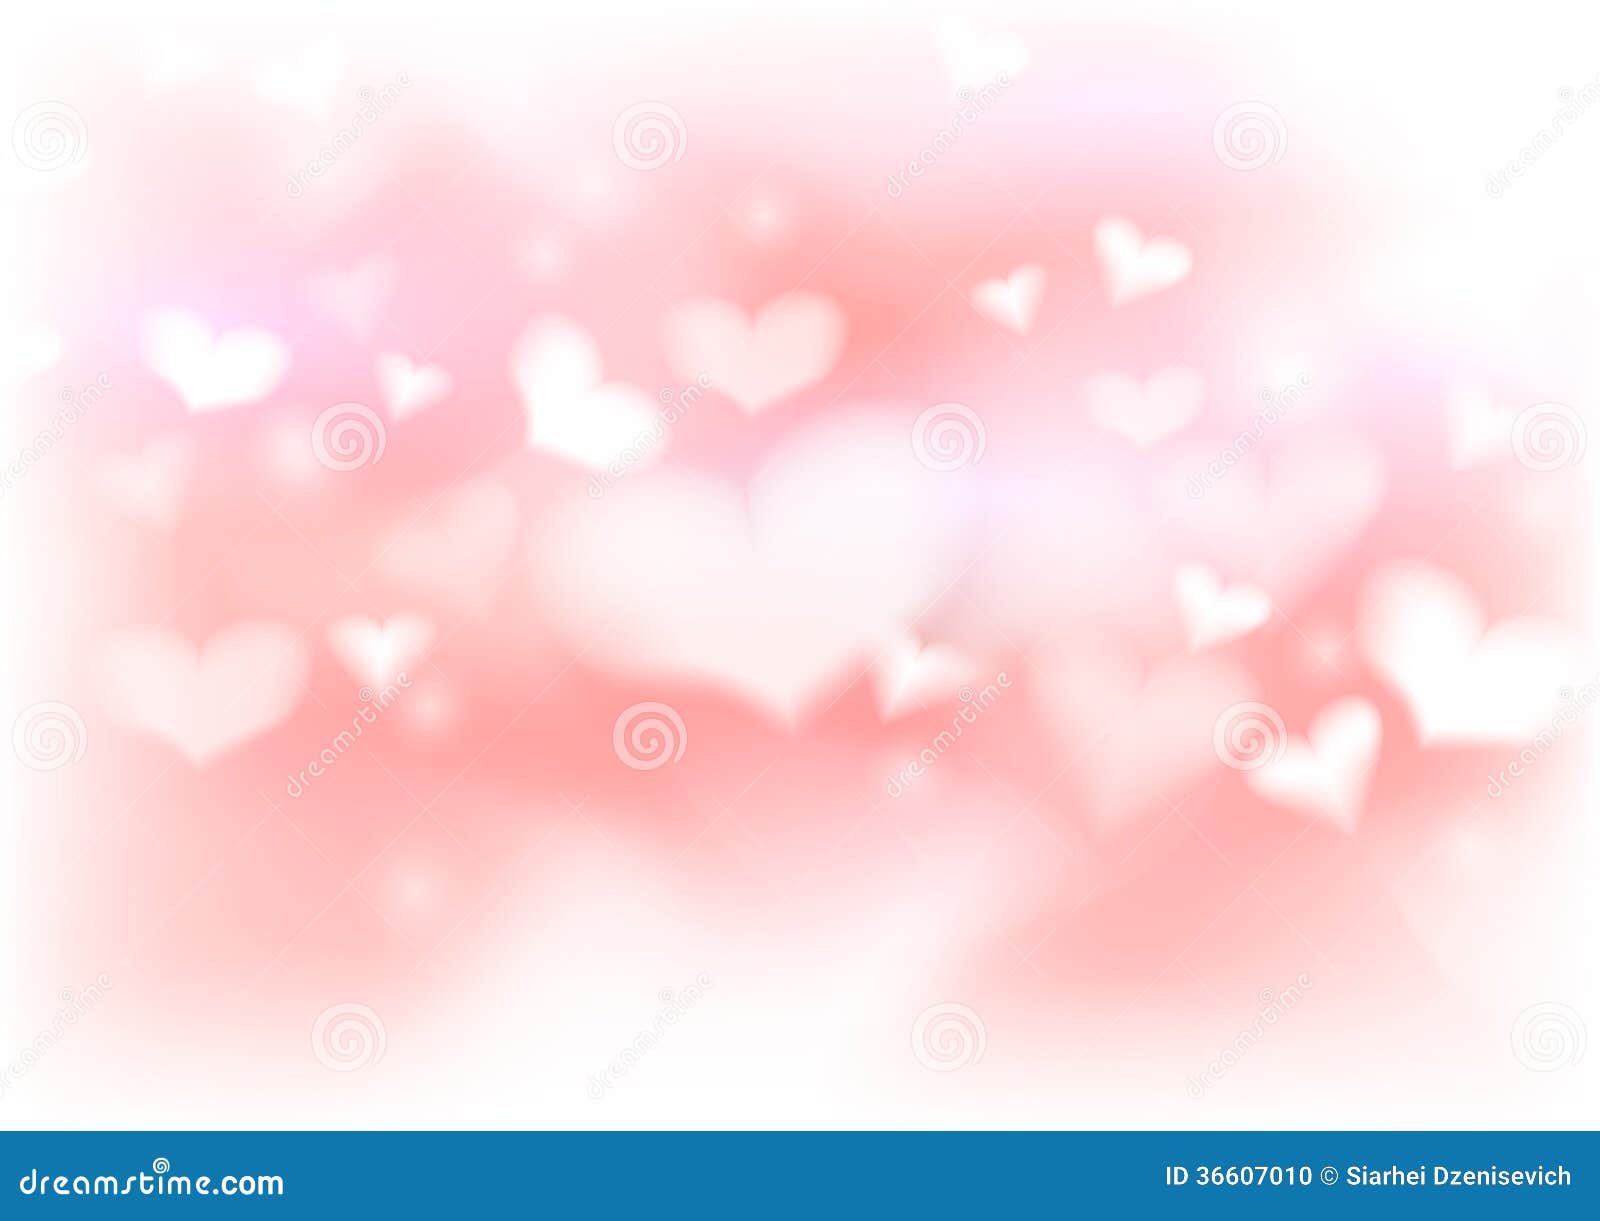 valentine background clipart - photo #48